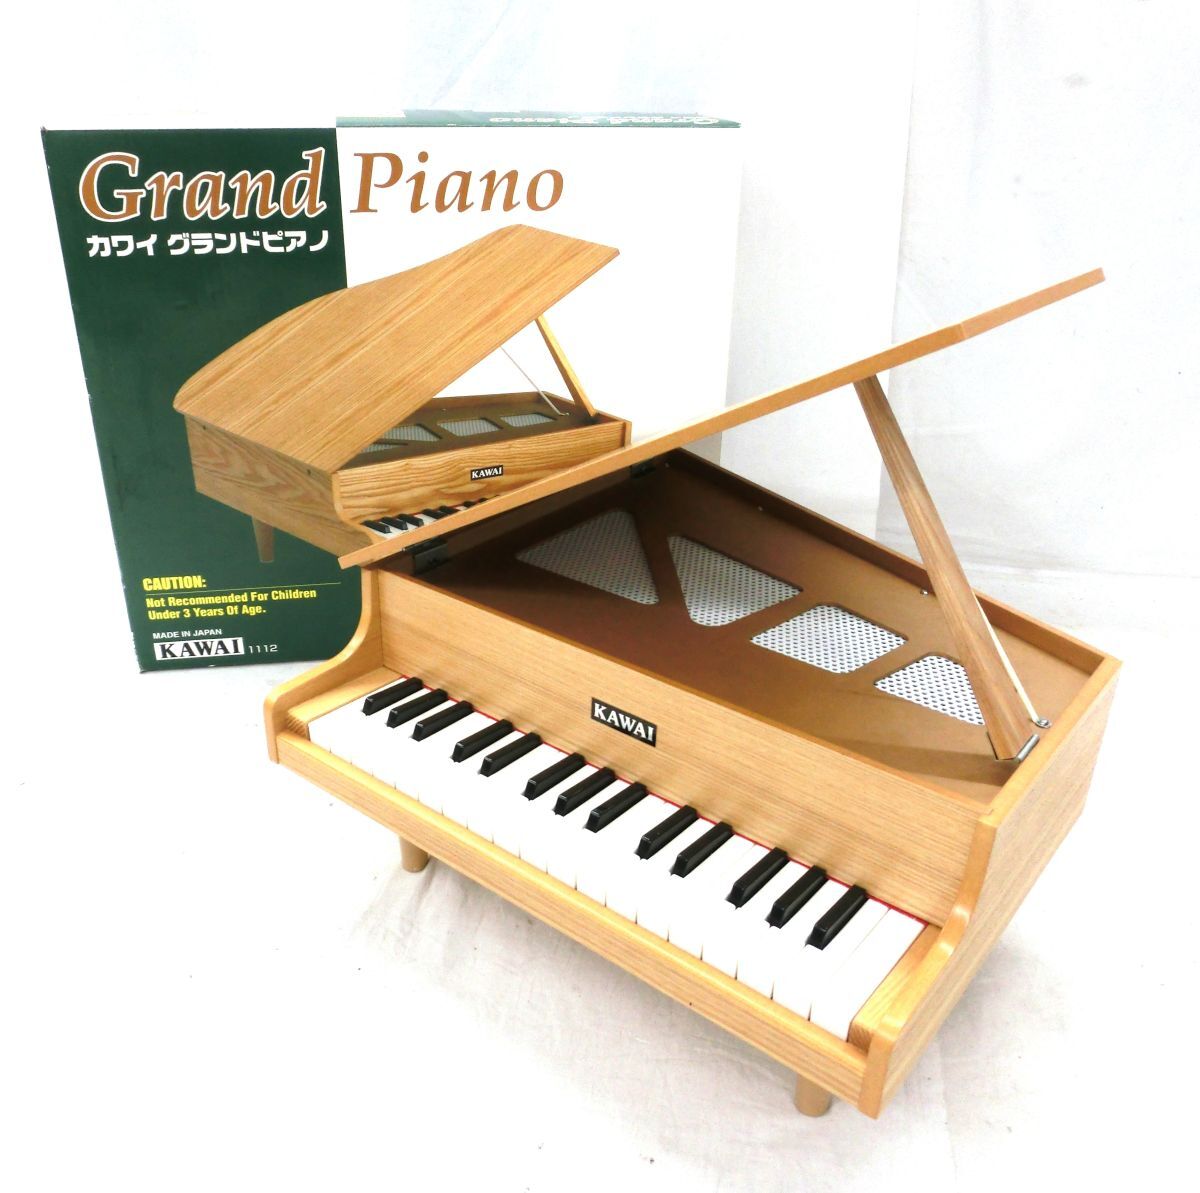 1000円スタート ピアノ玩具 KAWAI カワイ Grand Piano 1112 グランドピアノ 32鍵 木製 箱付 トイピアノ ミニピアノ 3 XX8060_画像1